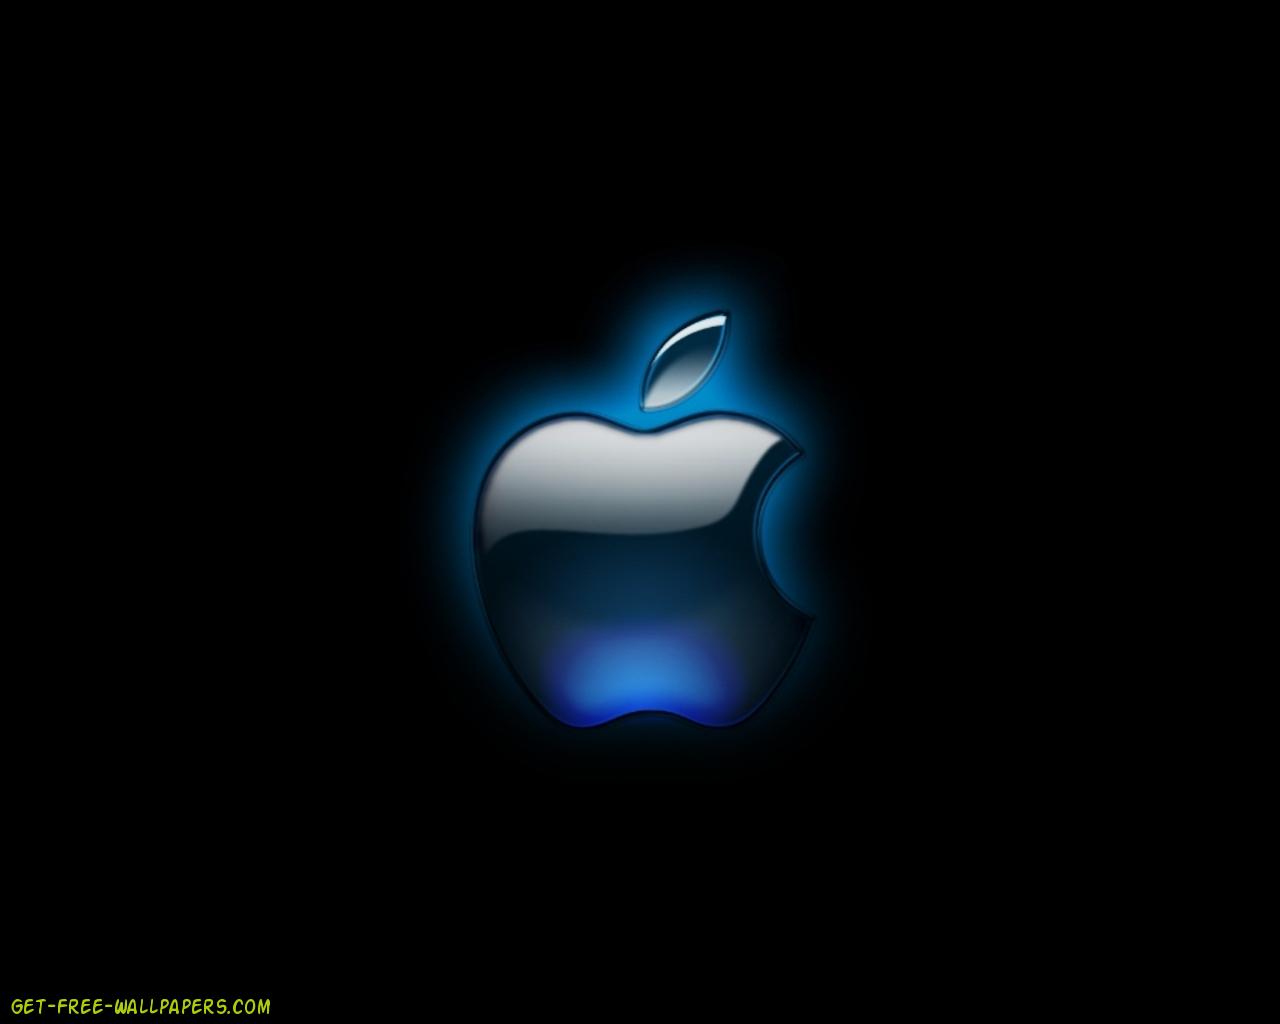 40 Gambar Black Apple Logo Wallpaper Hd terbaru 2020